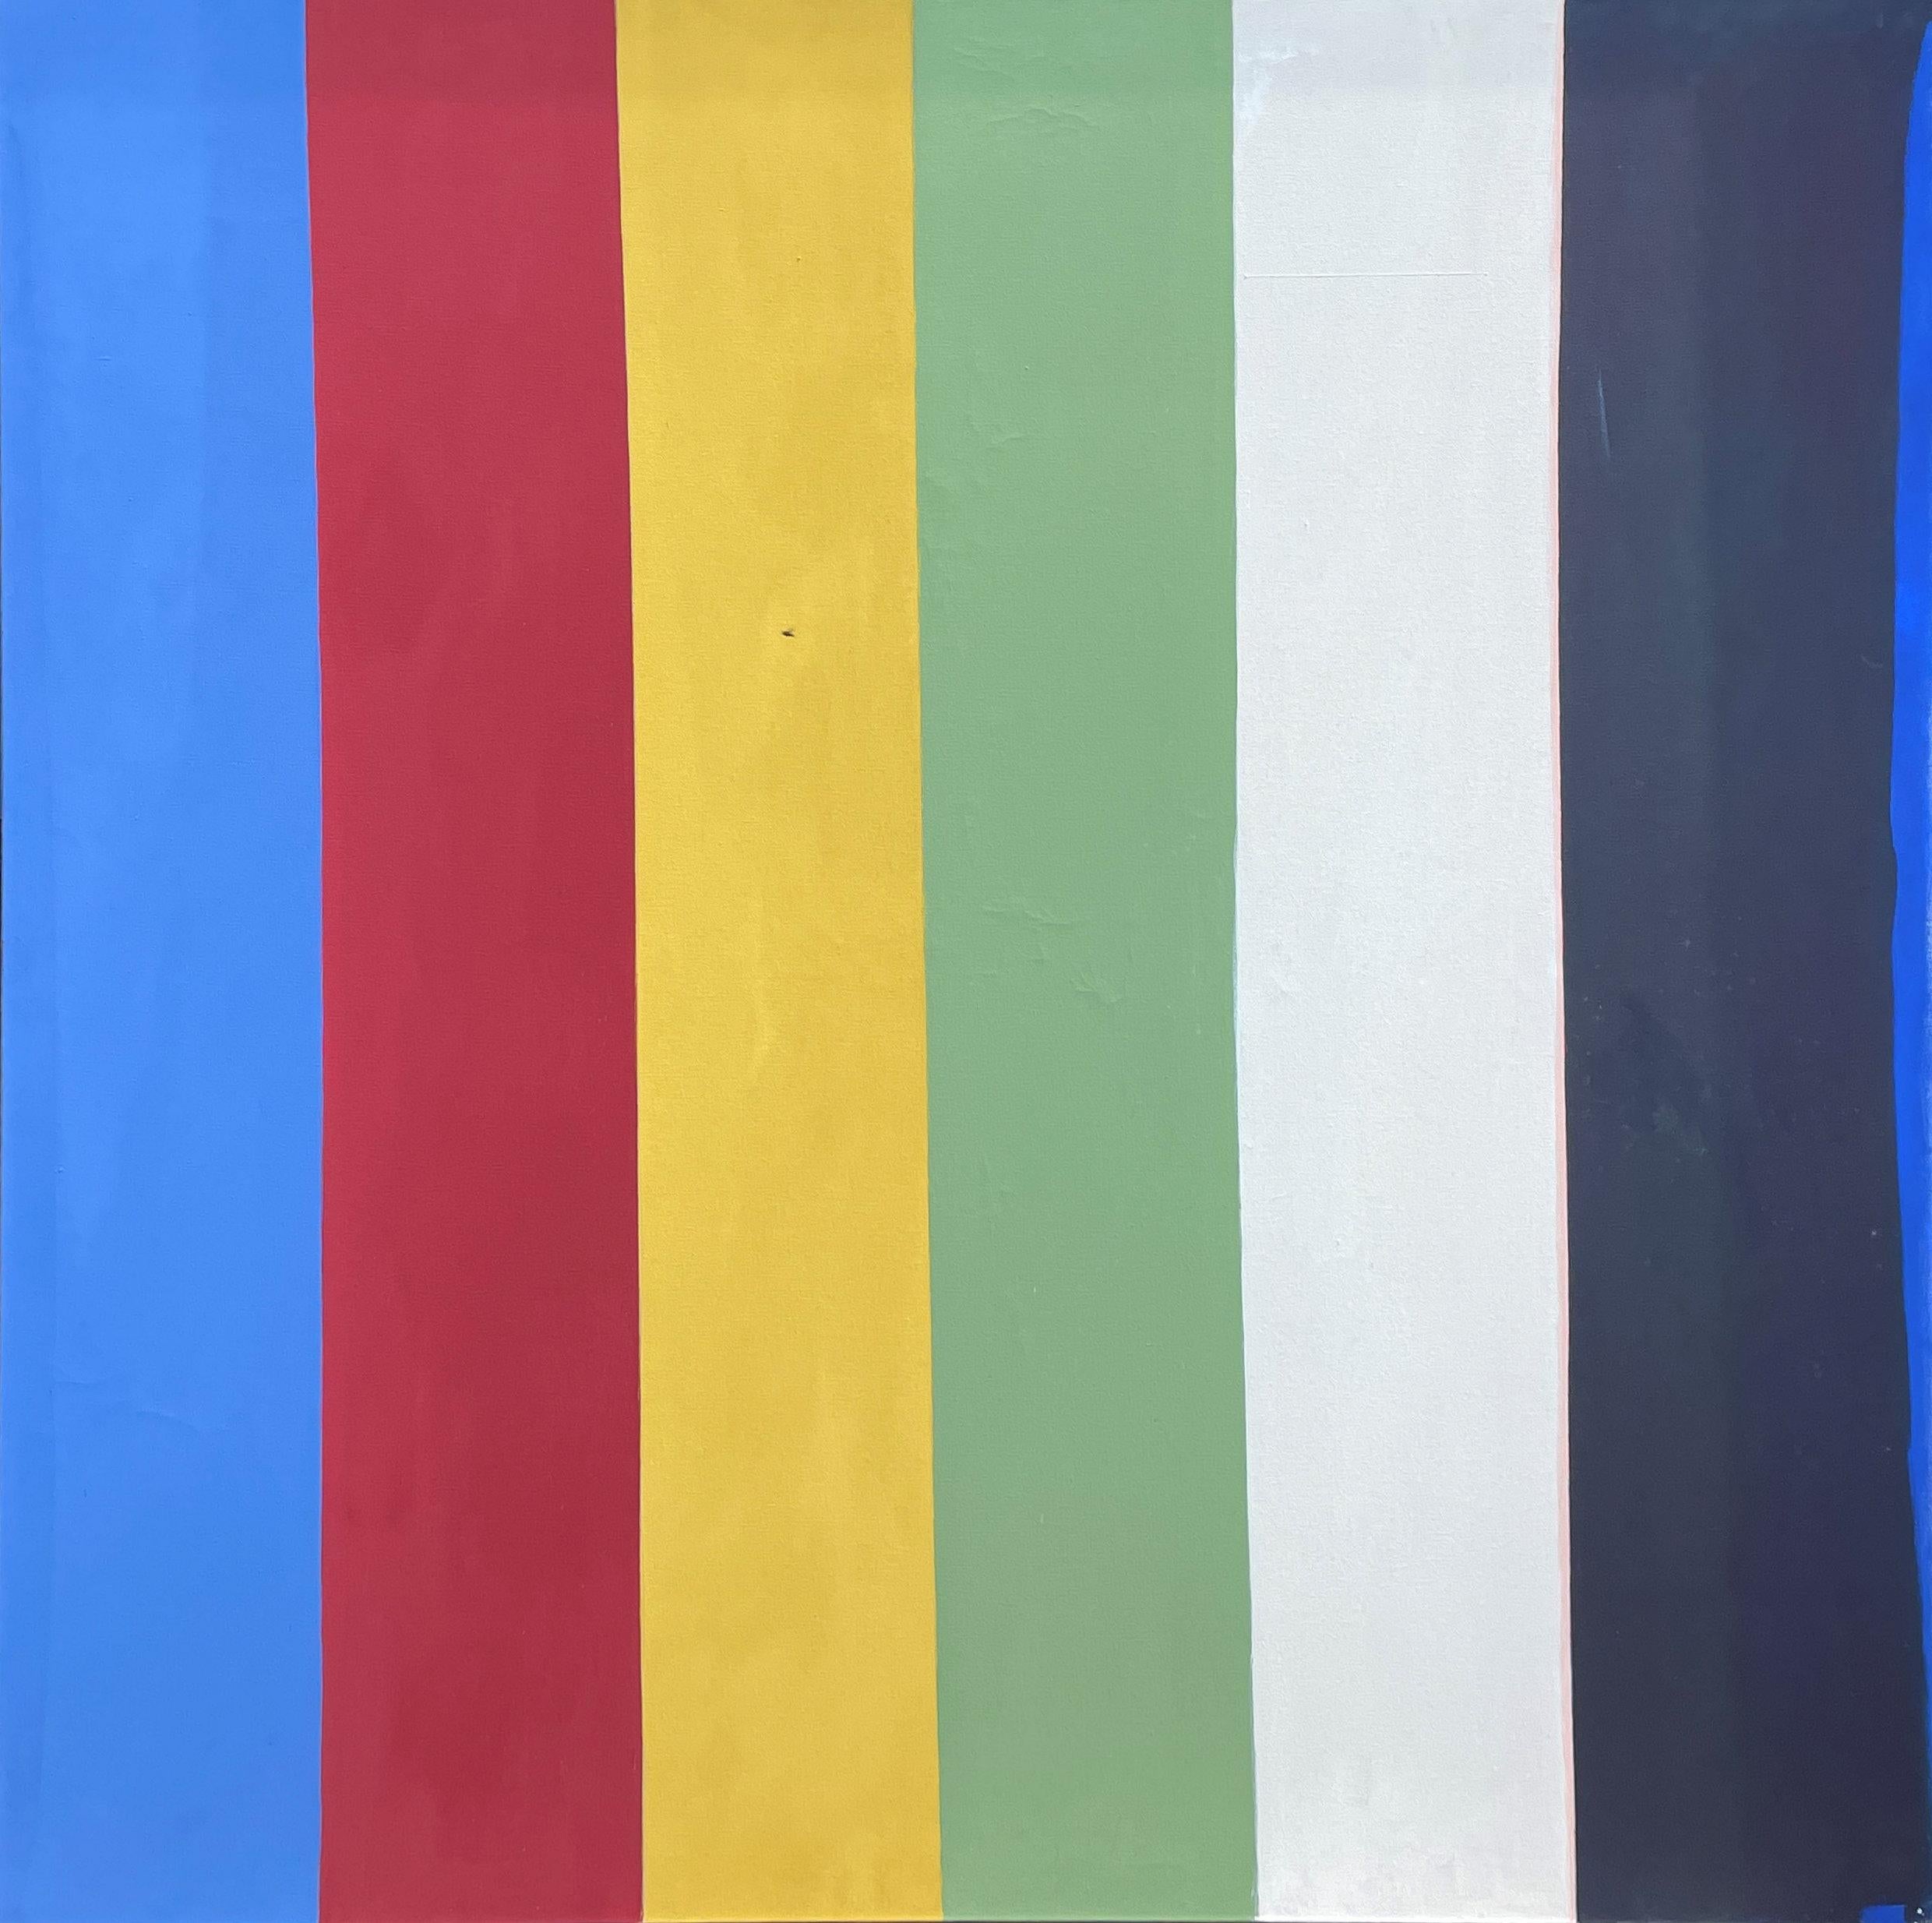 Calvert Coggeshall
Illumination, 1973
Signé, titré et daté au dos.
Acrylique sur toile
65 x 67 pouces

Calvert Coggeshall a travaillé comme peintre abstrait et décorateur d'intérieur principalement dans le Maine et à New York. De 1951 à 1978, il a